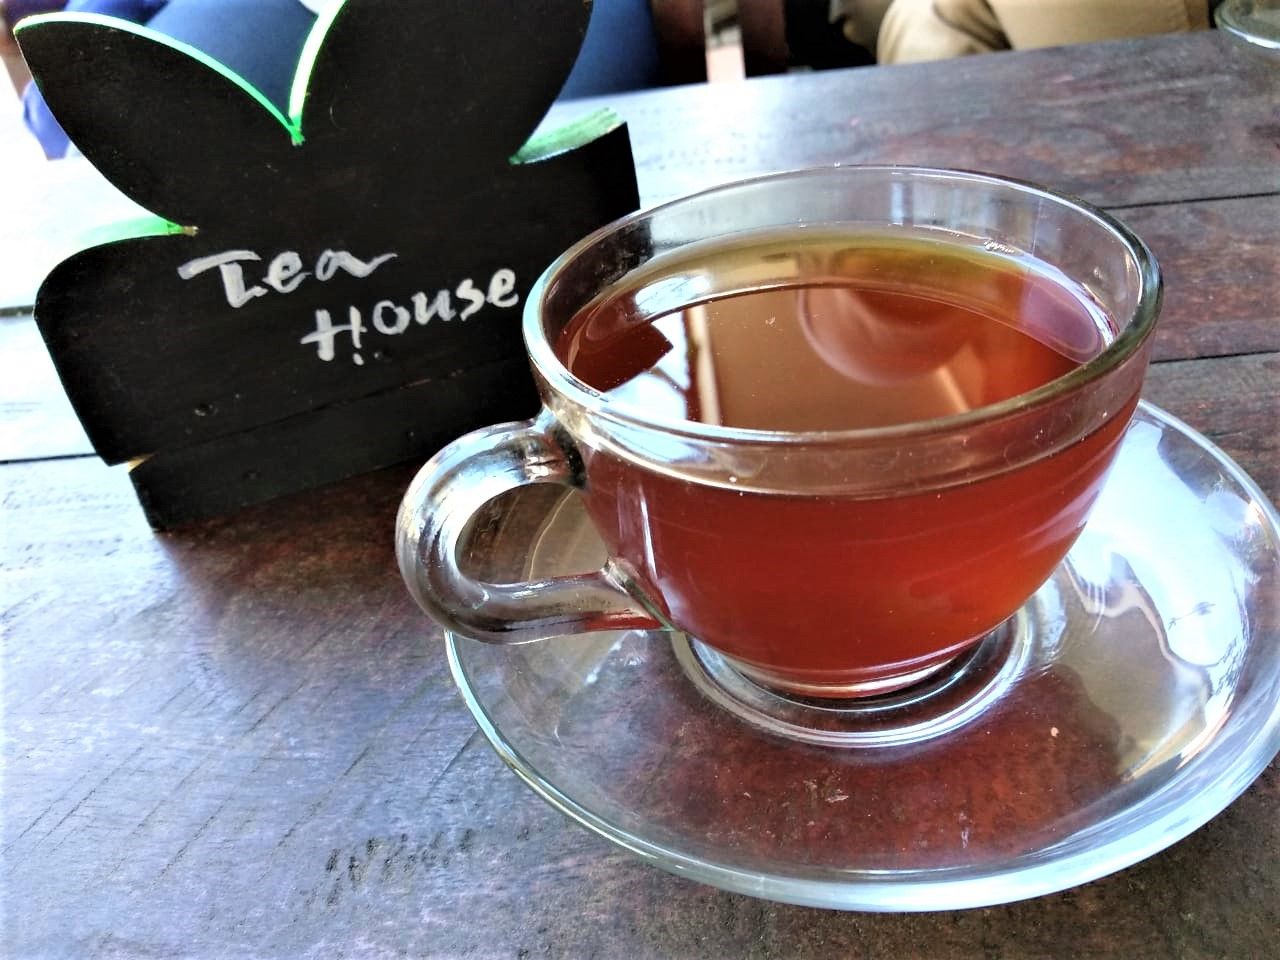 Menikmati teh hangat adalah pilihan favorit di Tea House